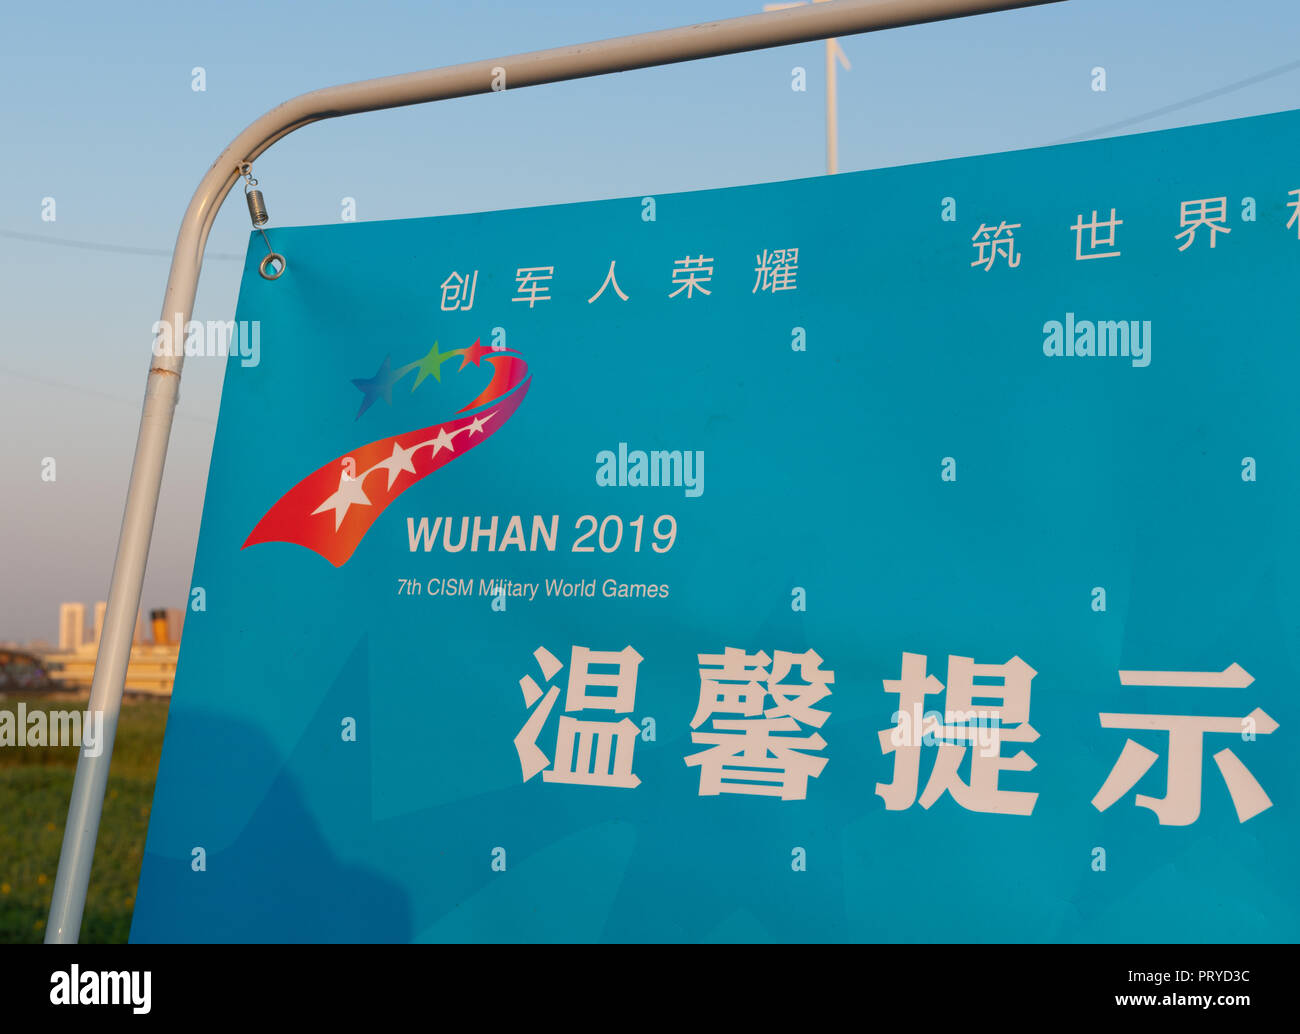 Vom 4. Oktober 2018, Wuhan China: Wuhan 2019 7th CISM Military World Games Emblem auf einem im Board Stockfoto